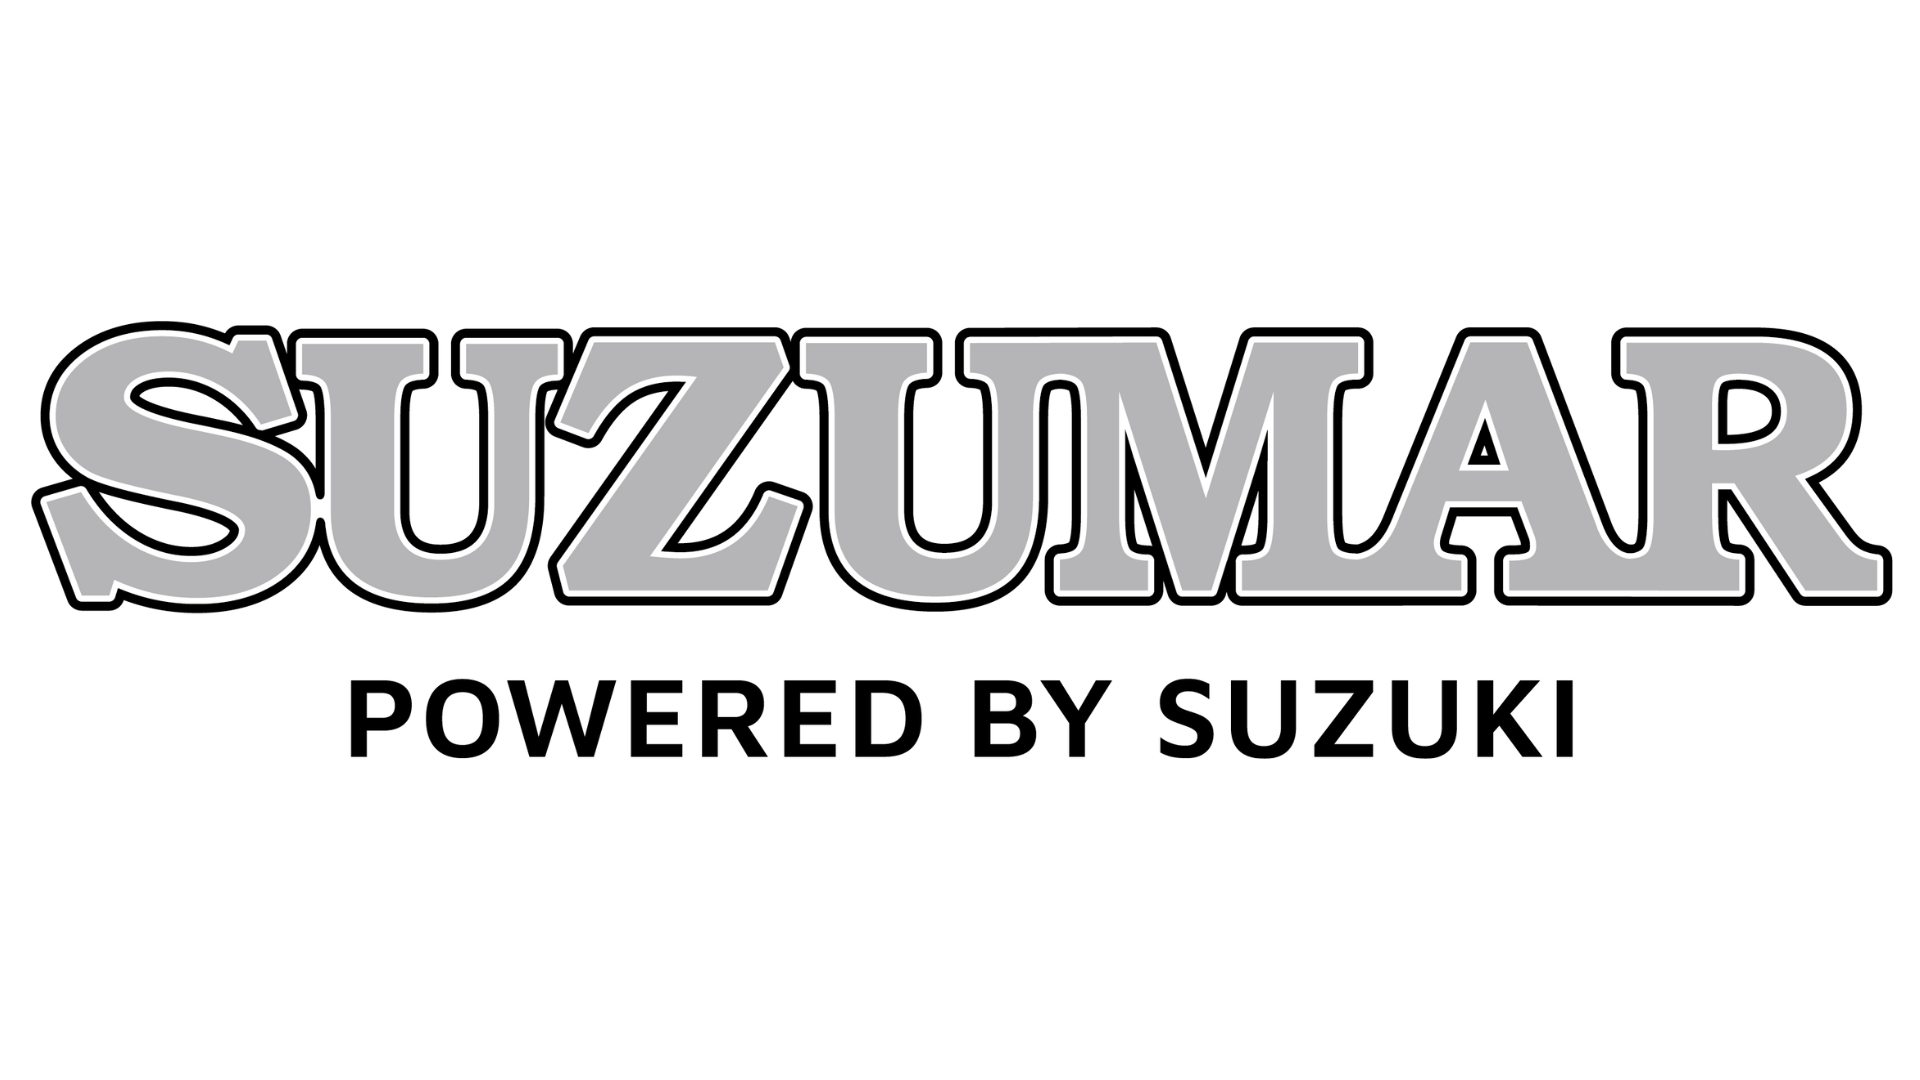 Suzumar